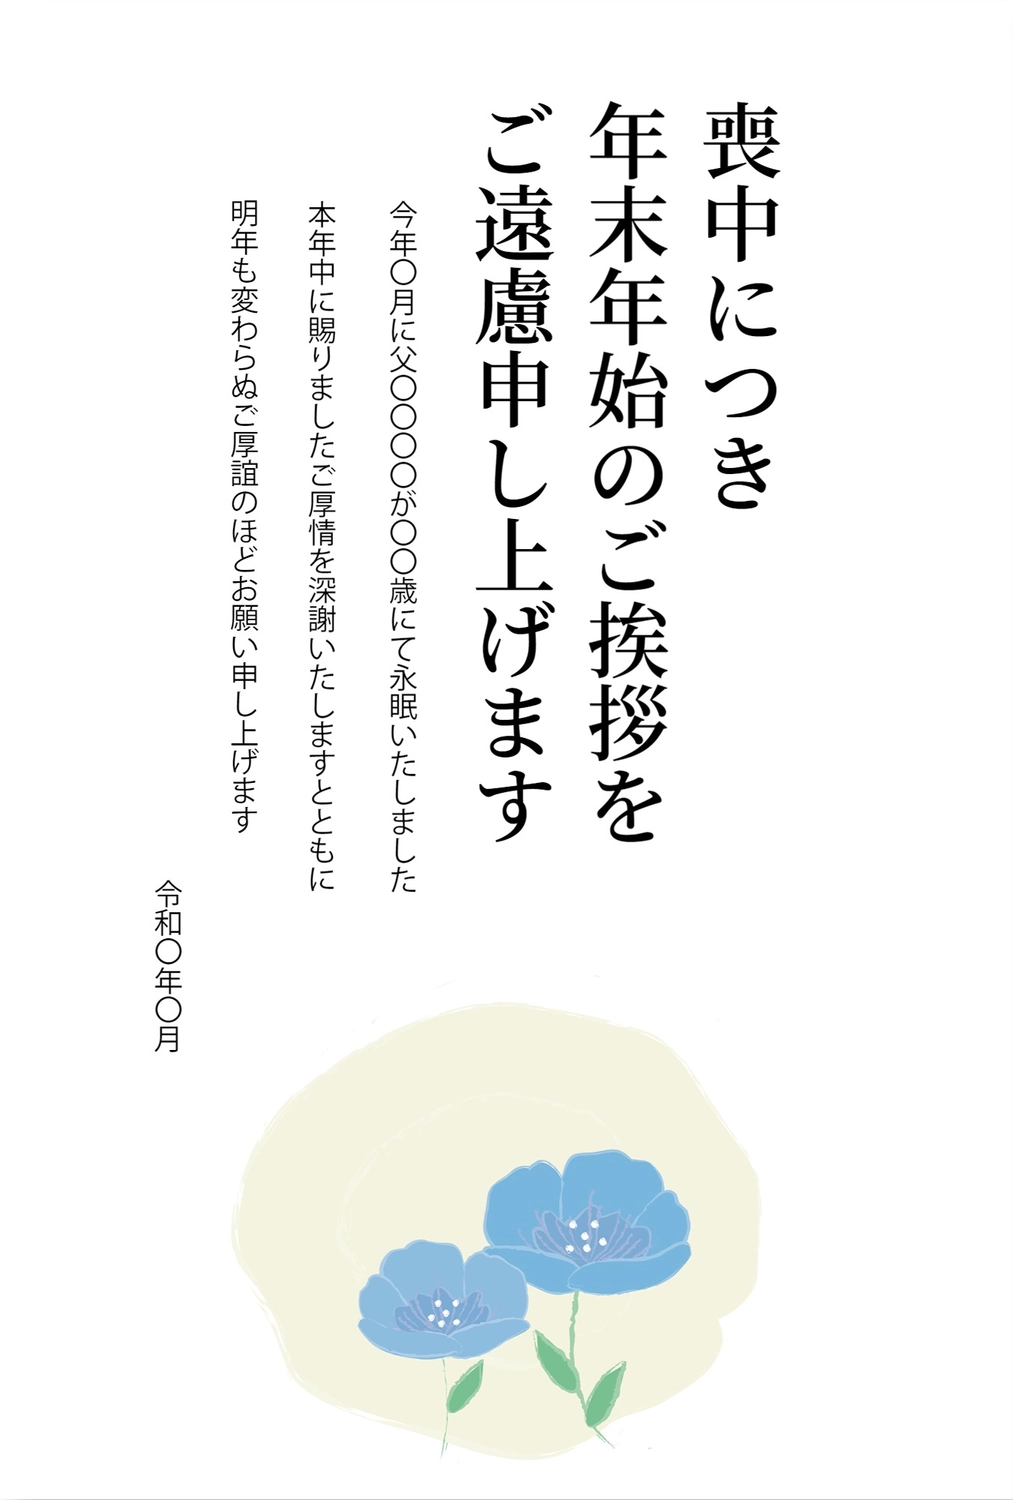 青い花の喪中はがき, New Year's greeting card, death, condolence, Mourning Postcard template